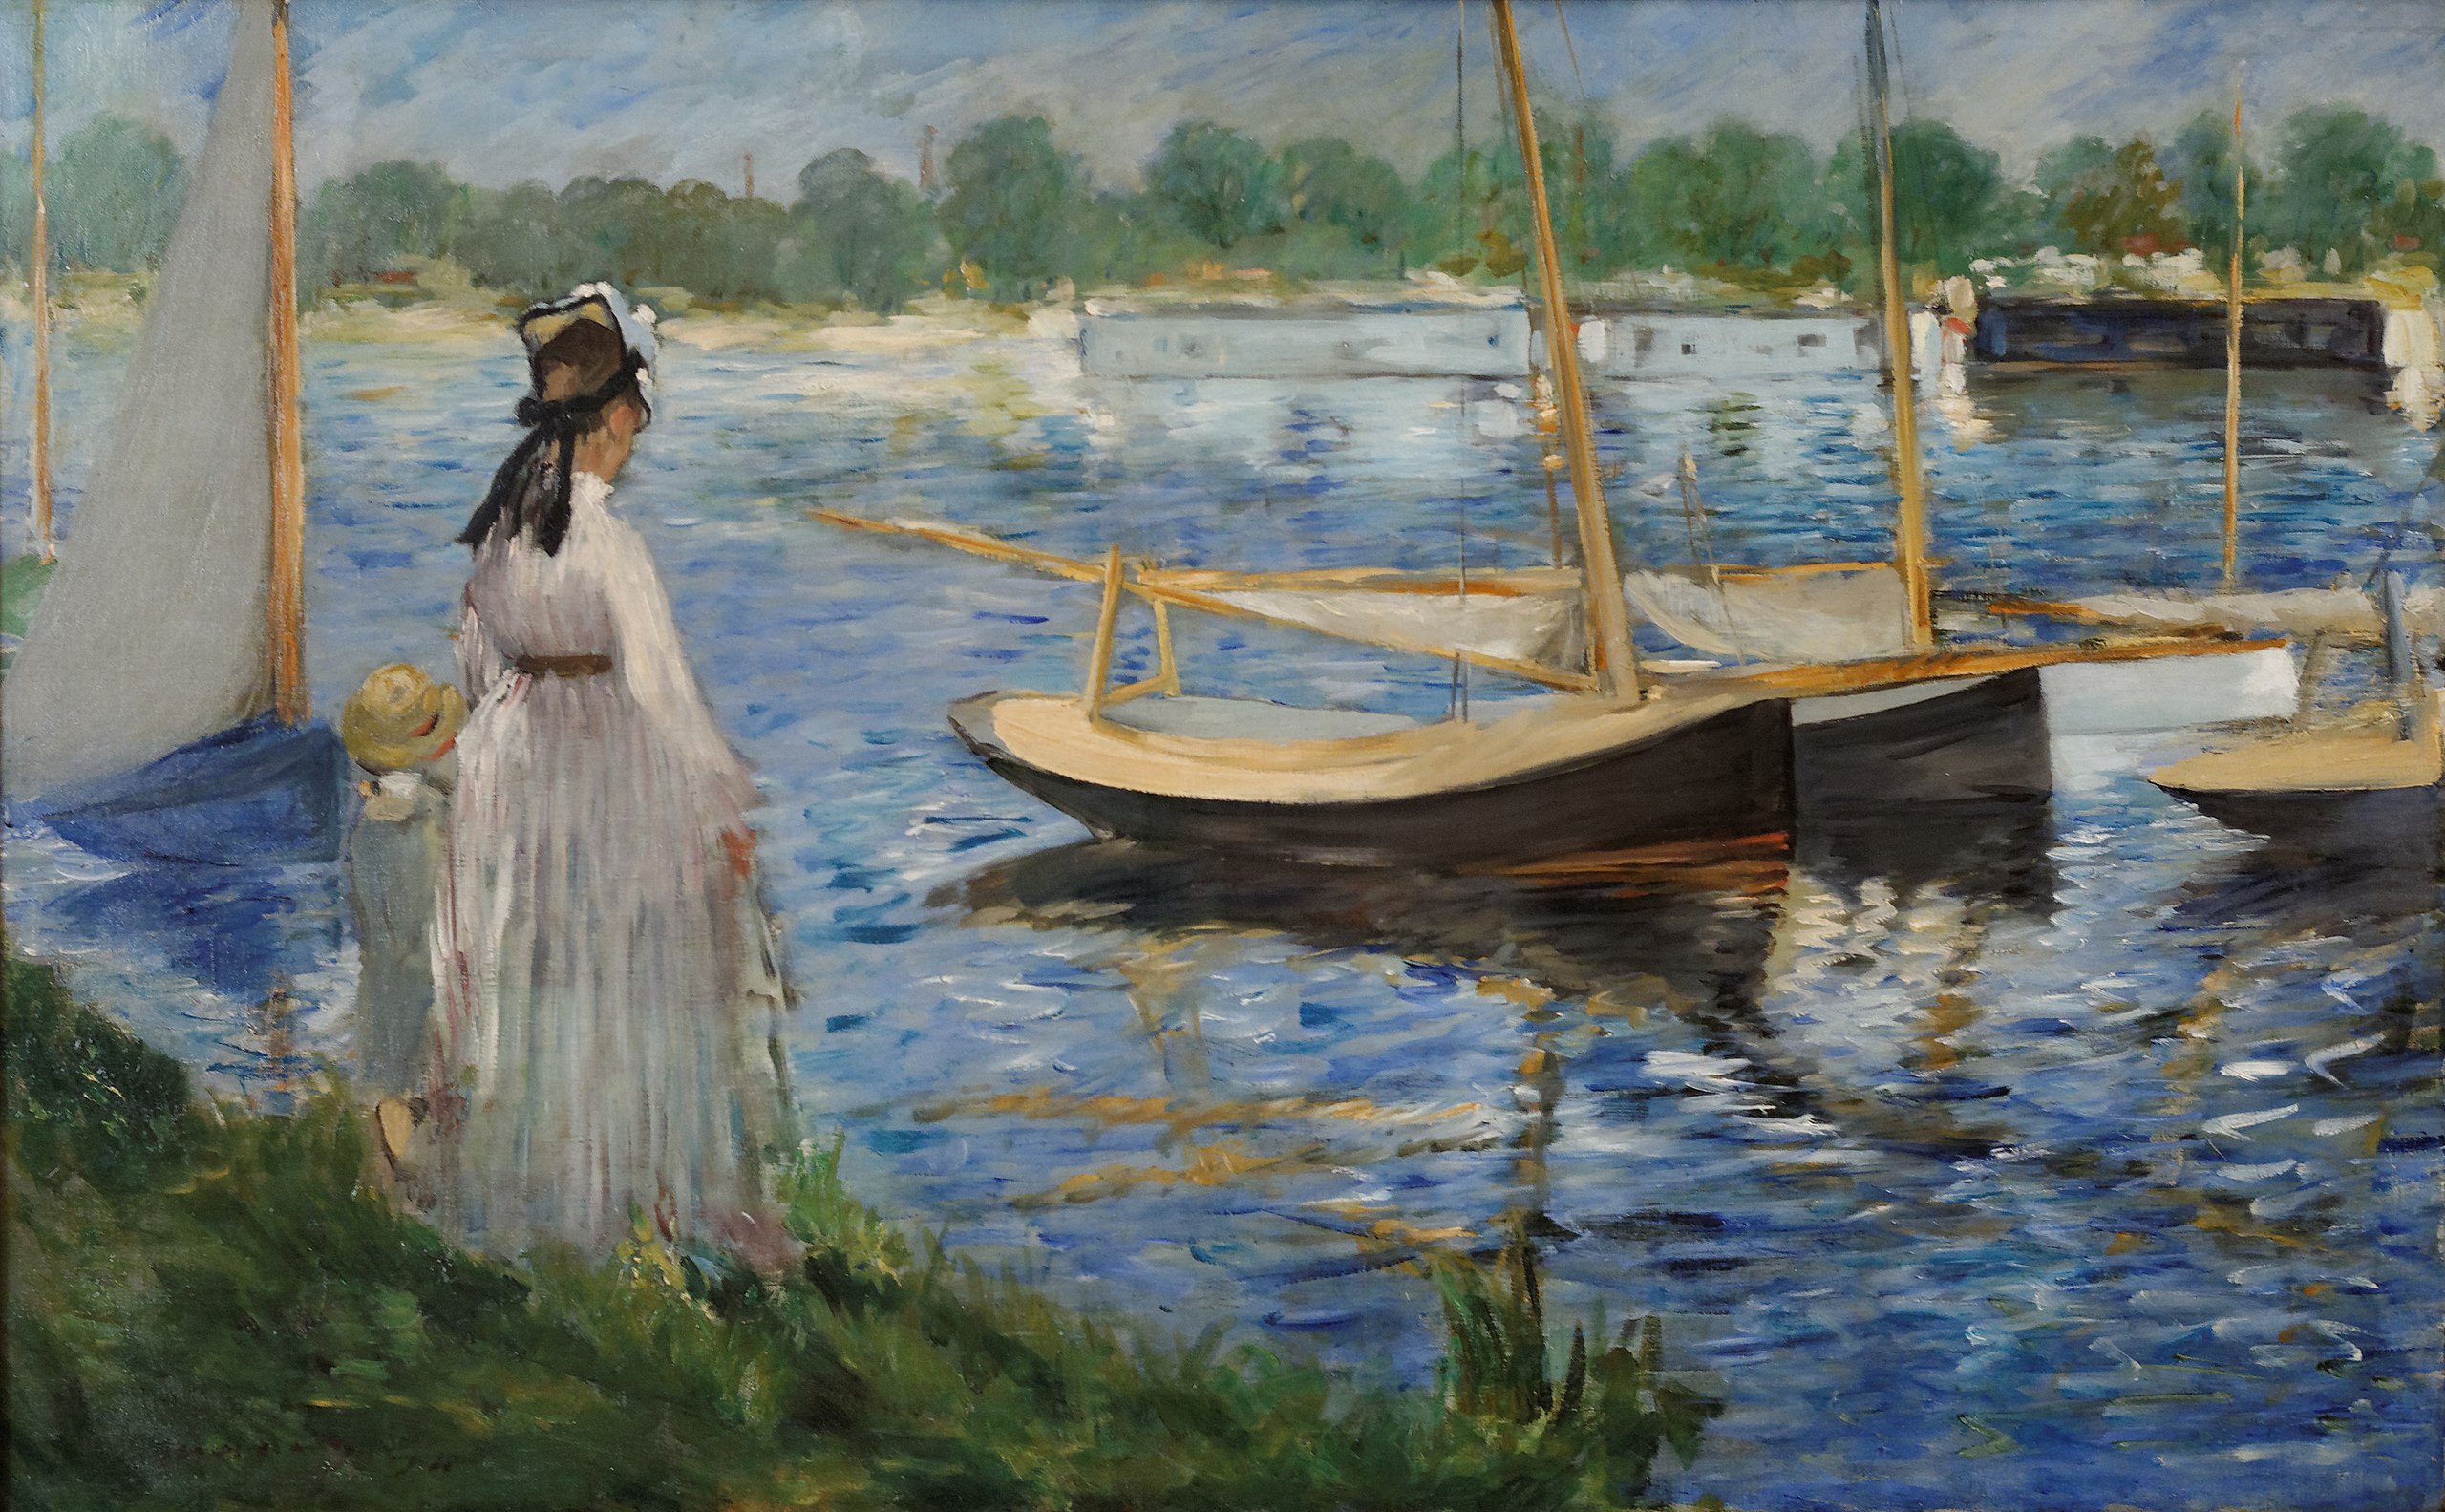 阿讓特伊的塞納河畔 by Édouard Manet - 1874 年 - 62.3 x 87 釐米 